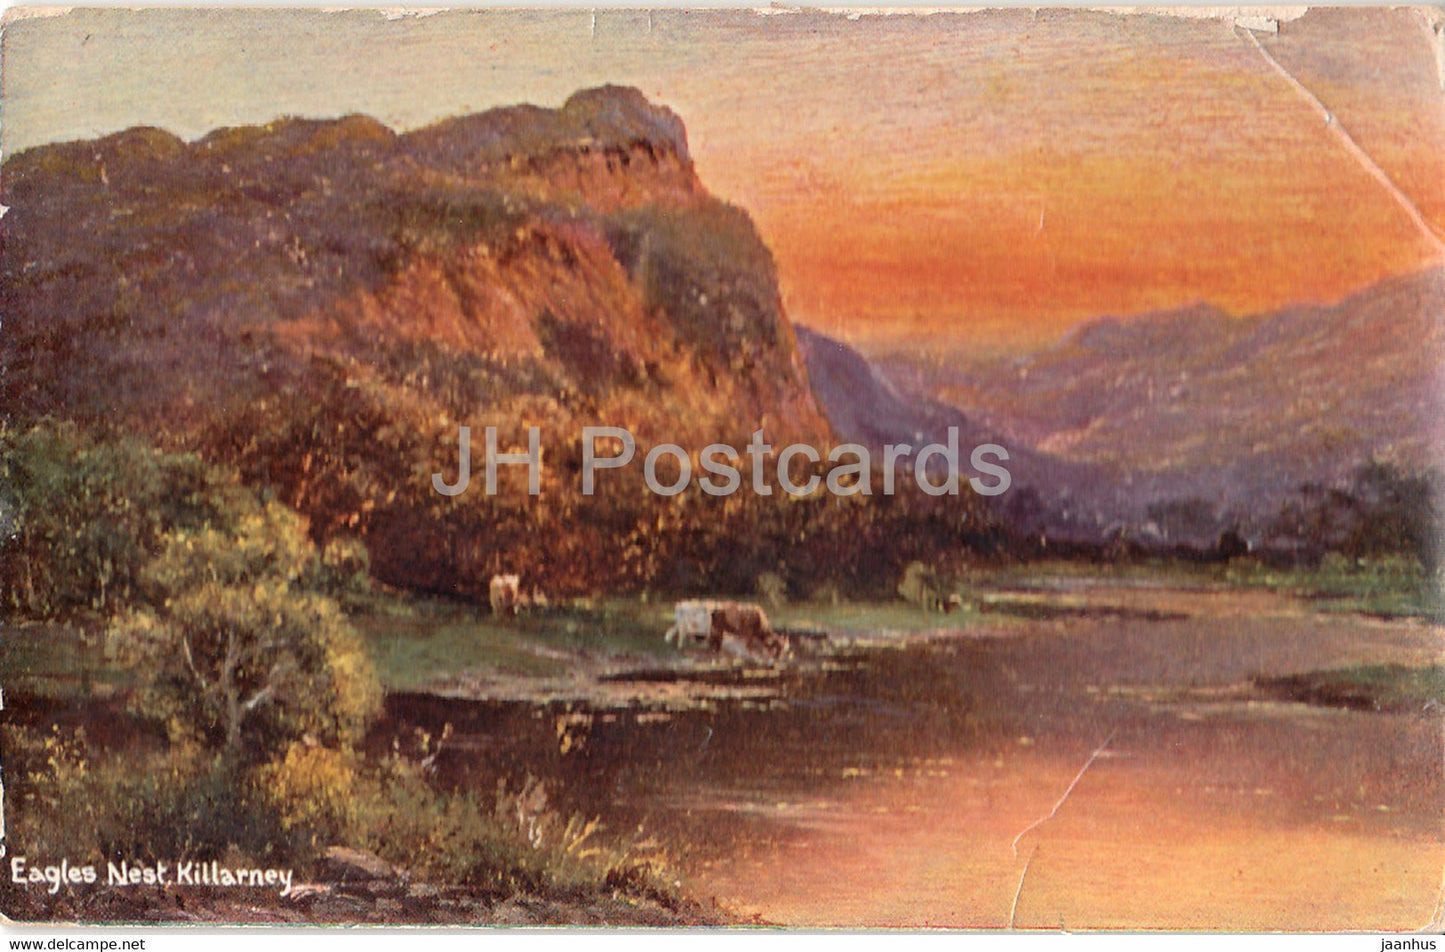 Killarney - Eagles Nest - old postcard - 1908 - Ireland - used - JH Postcards